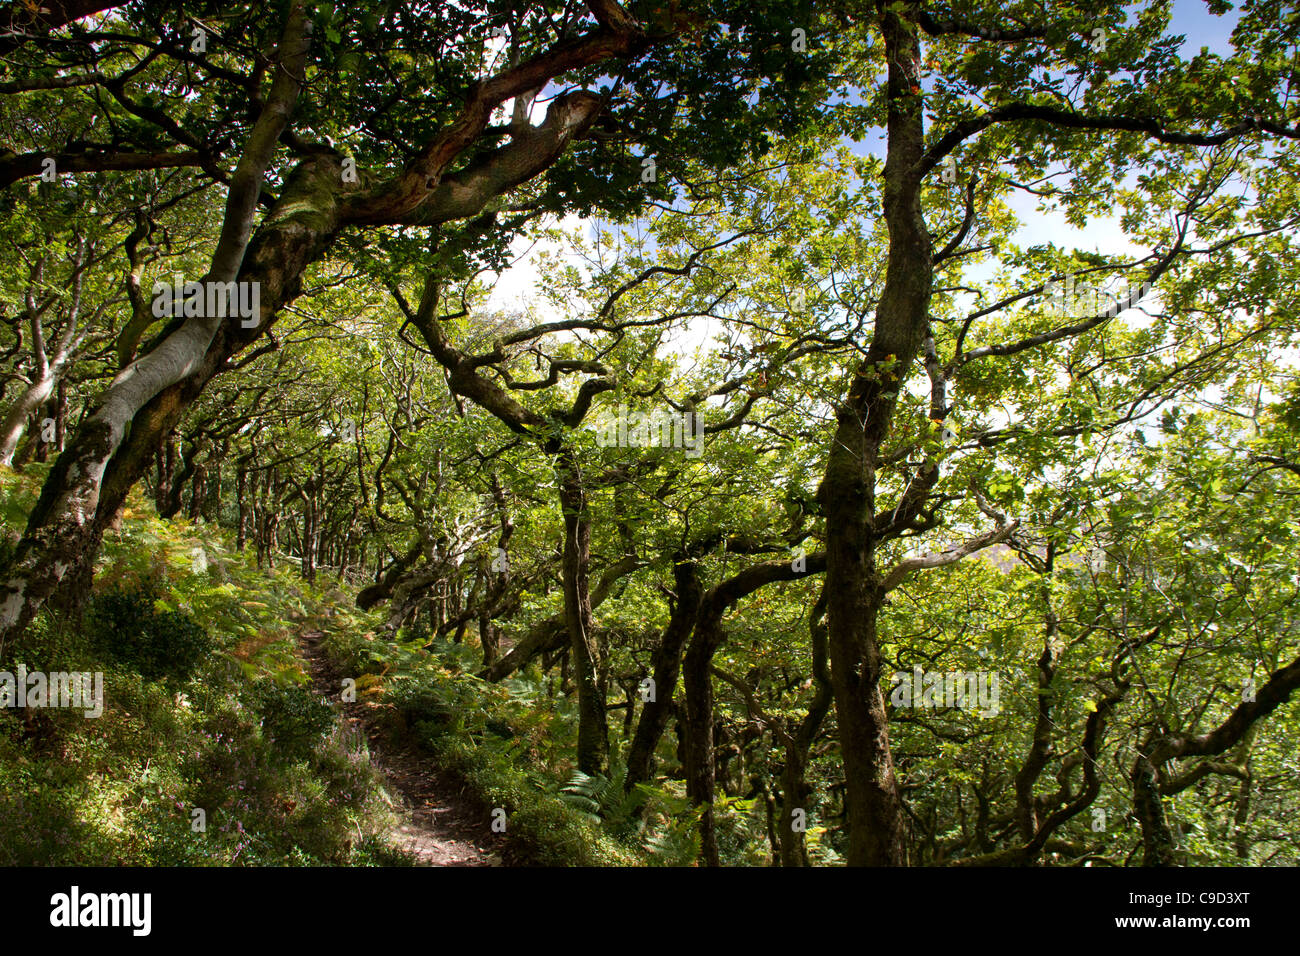 Horner wood on Exmoor, England Stock Photo